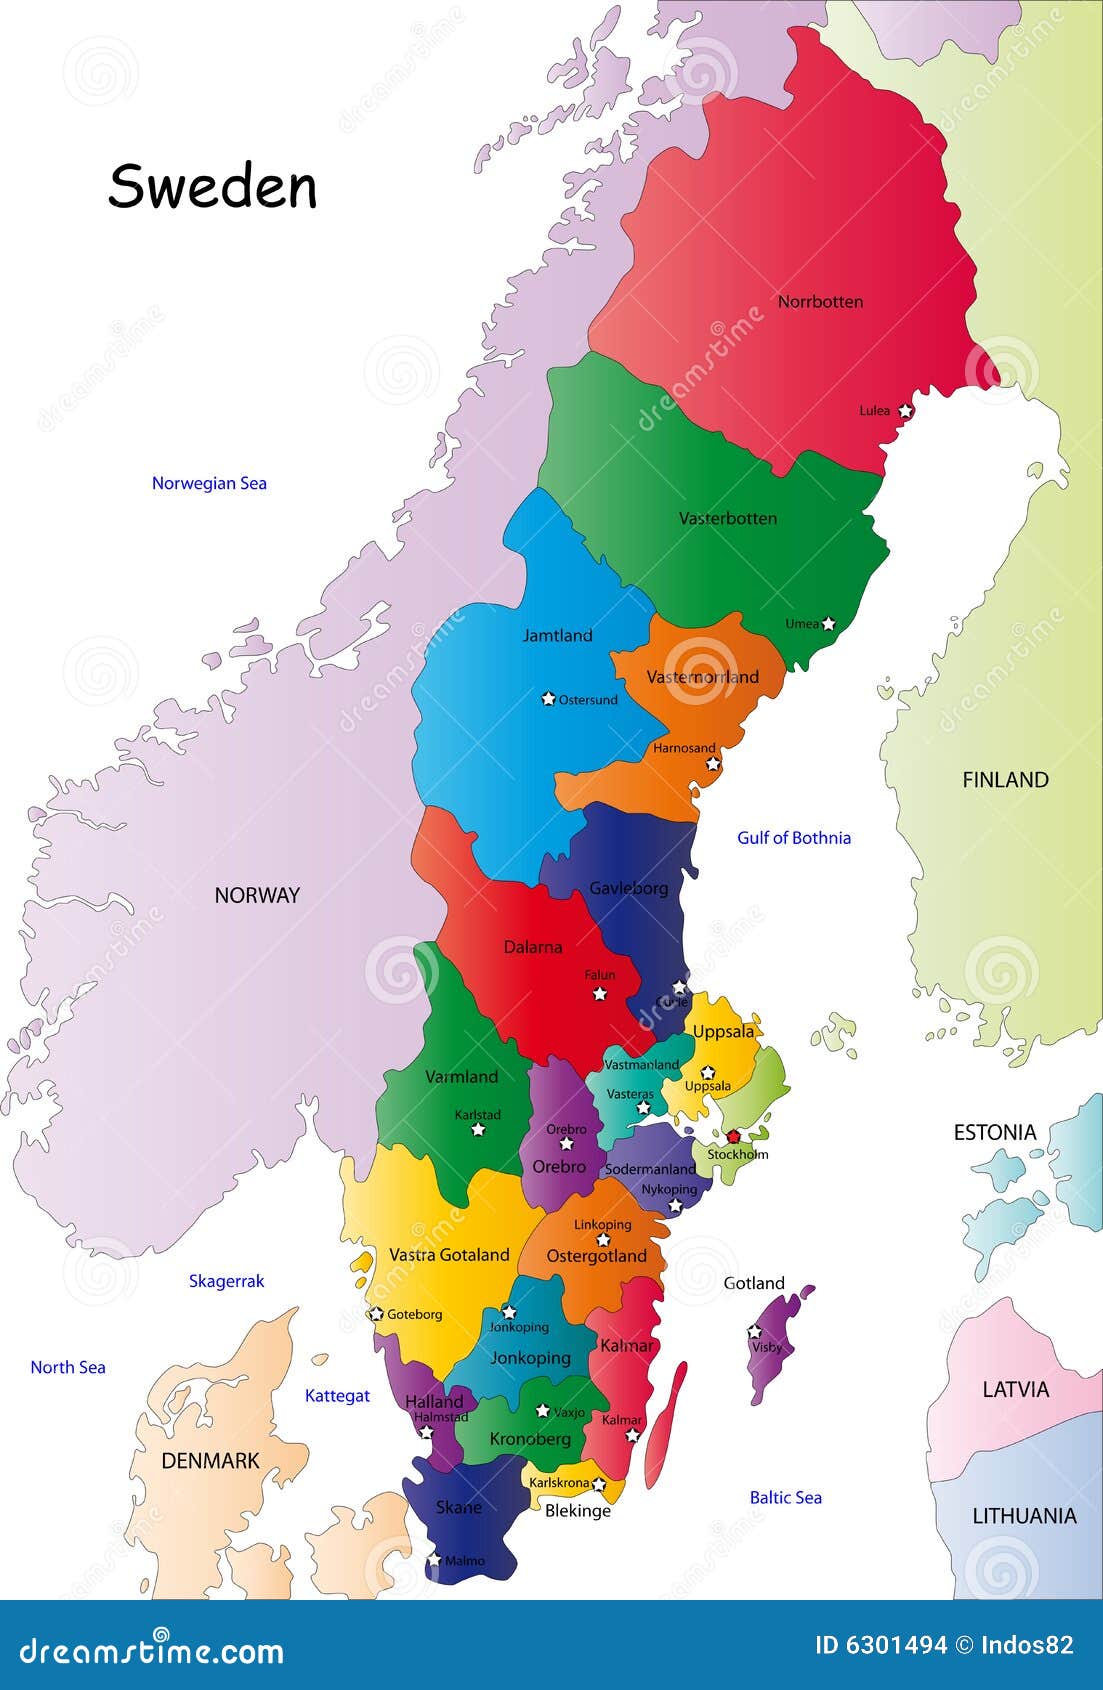 Programma della Svezia illustrazione vettoriale. Immagine di atlante